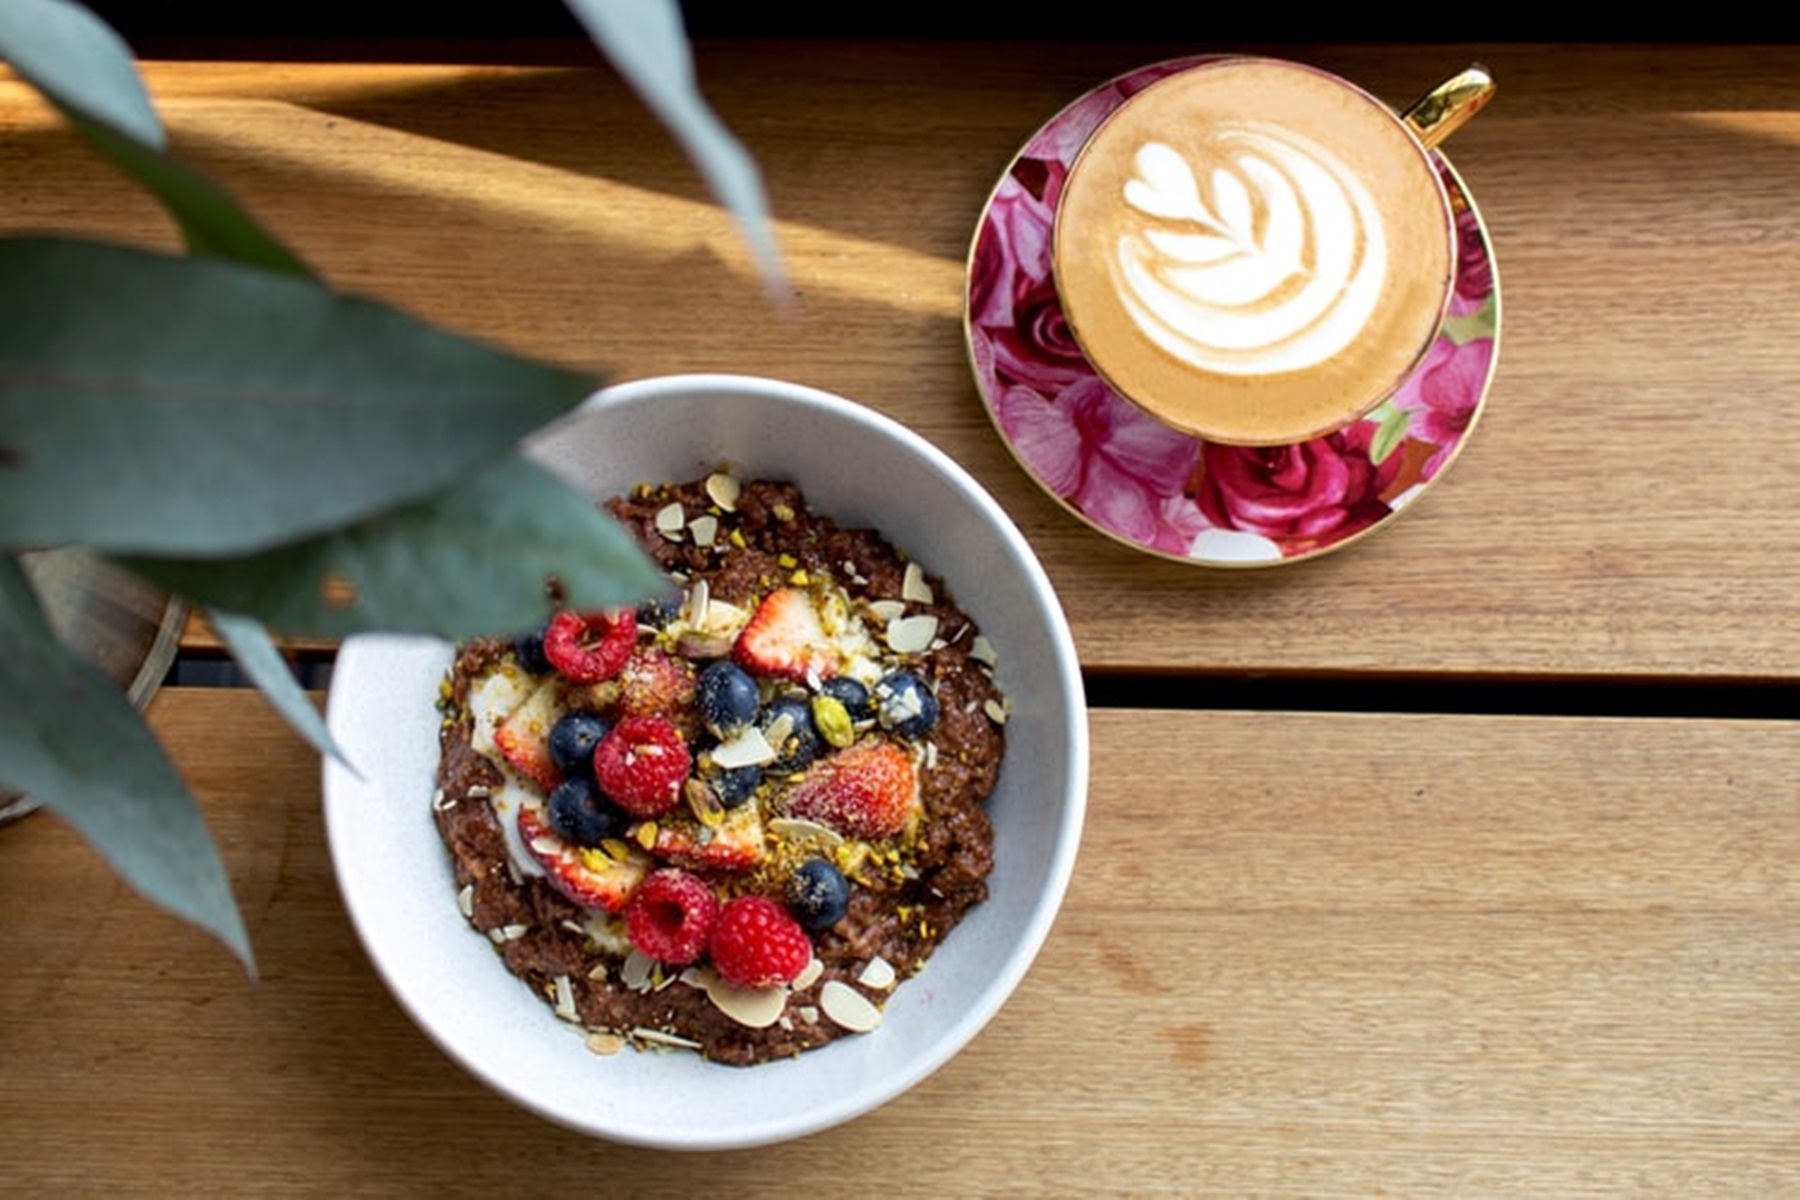 Τι να φάω το πρωί: Προτάσεις για να ξεκινήσει ευχάριστα η μέρα σας